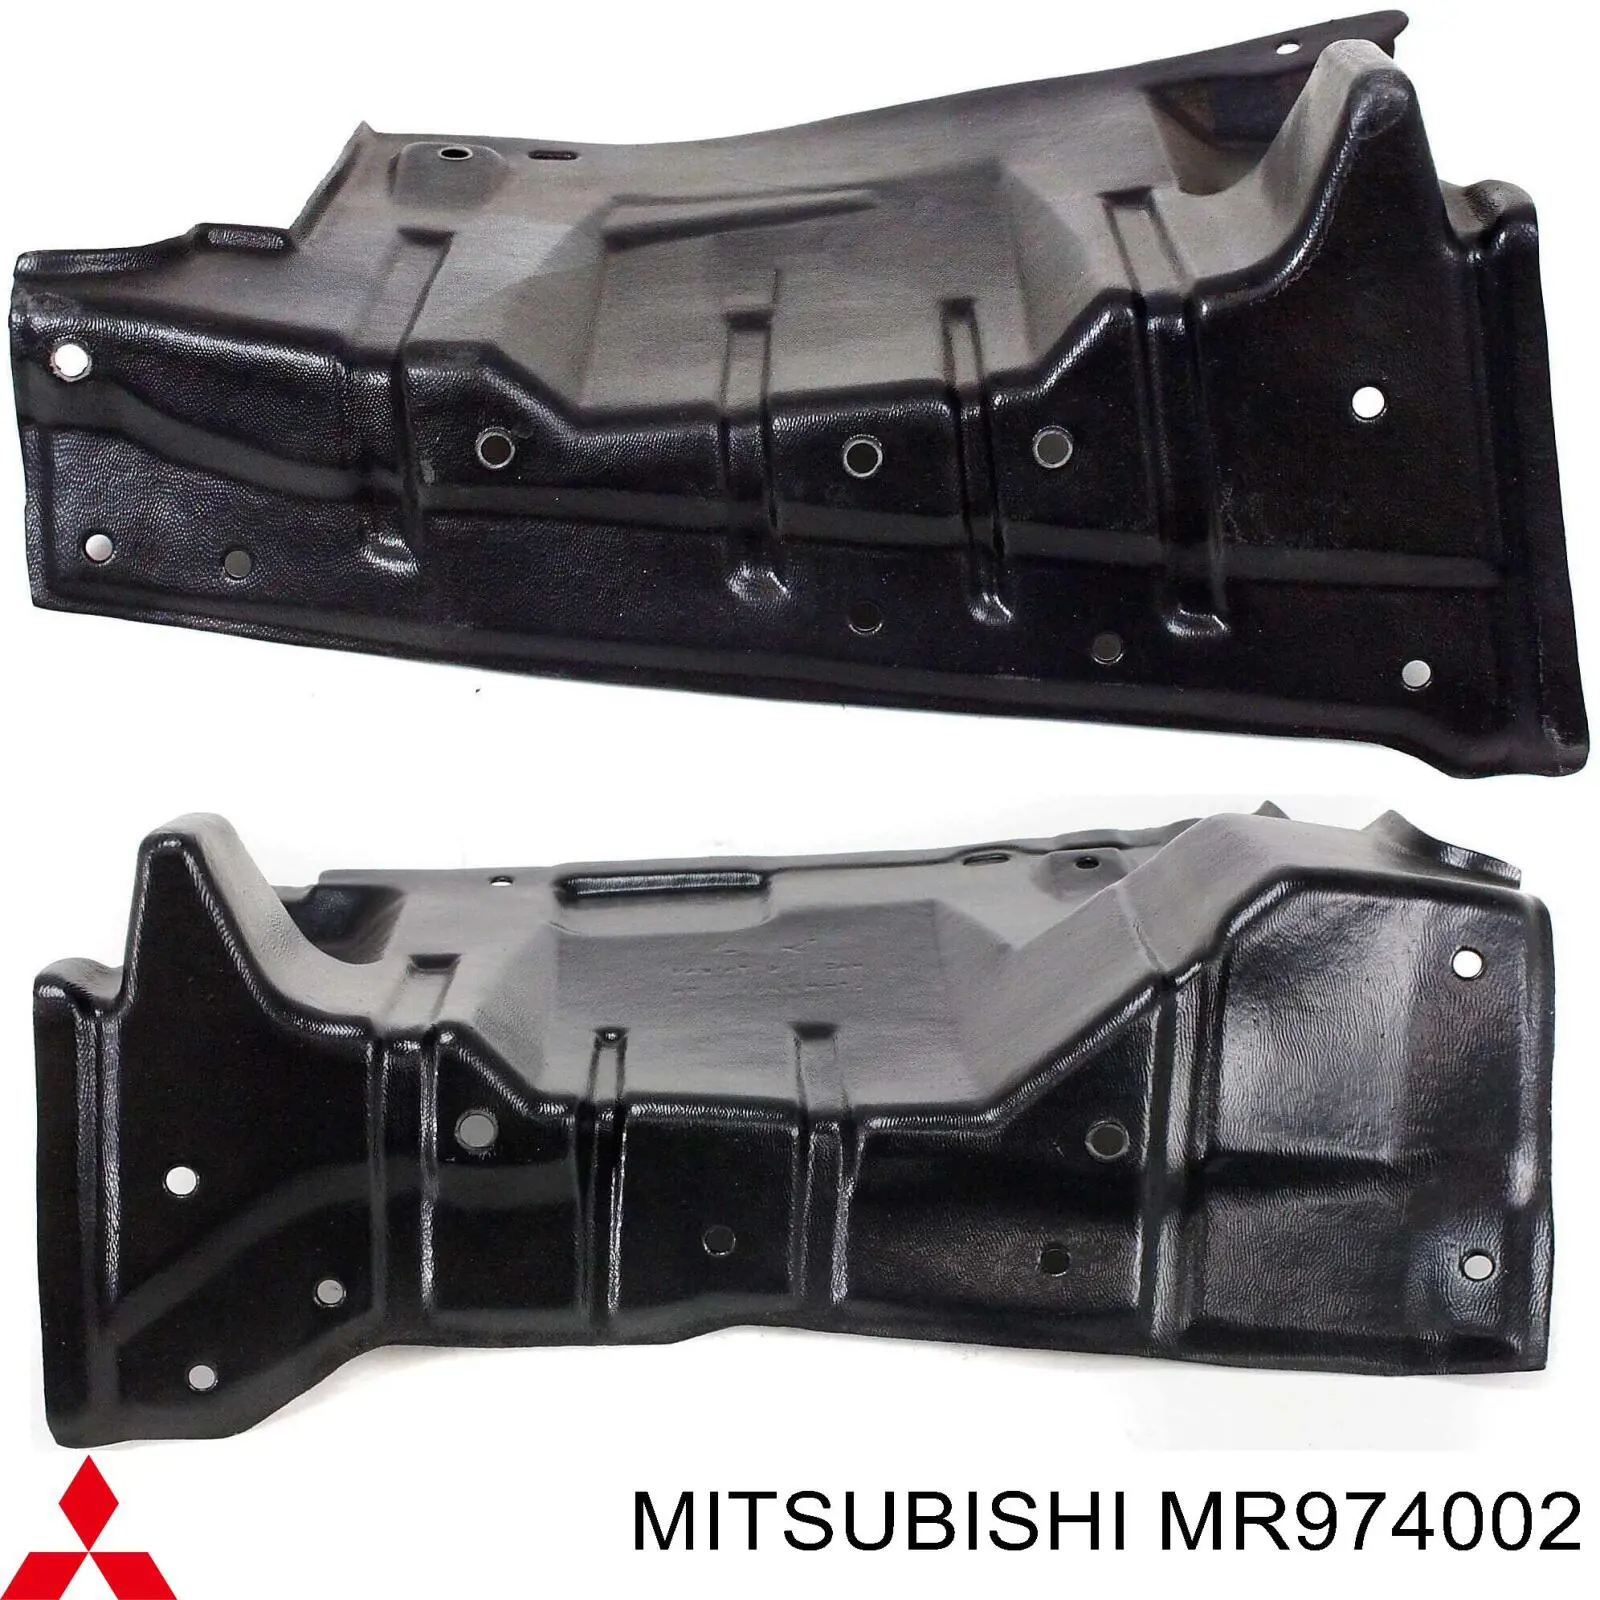 MR974002 Mitsubishi защита двигателя левая